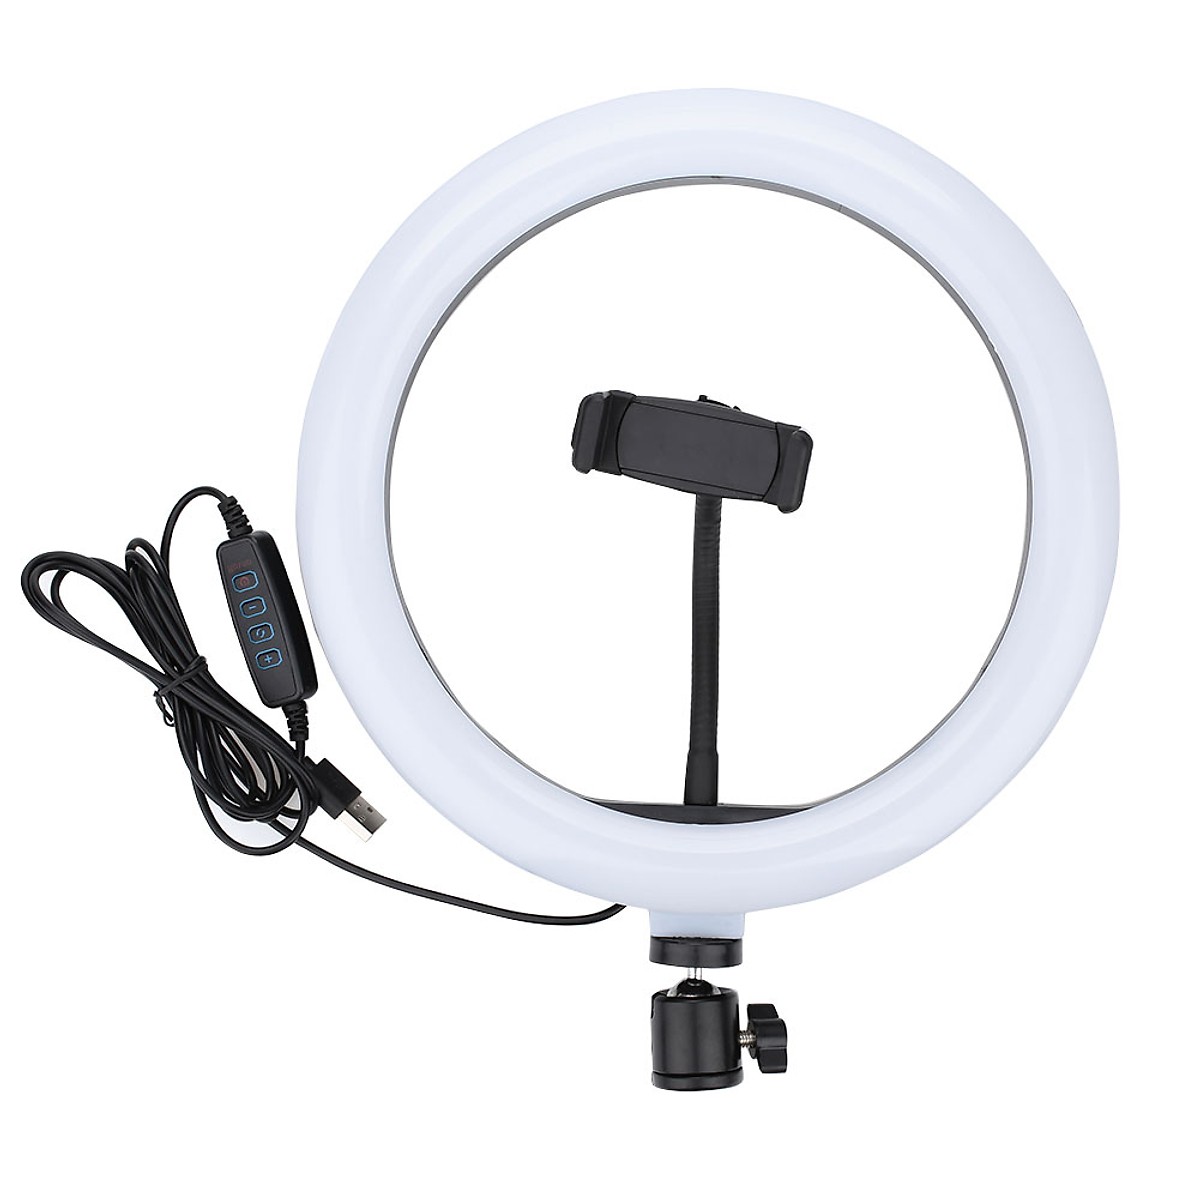 Đèn led livestream 33cm (Φ33) 3 chế độ đèn tích hợp giá đỡ điện thoại - Hàng nhập khẩu